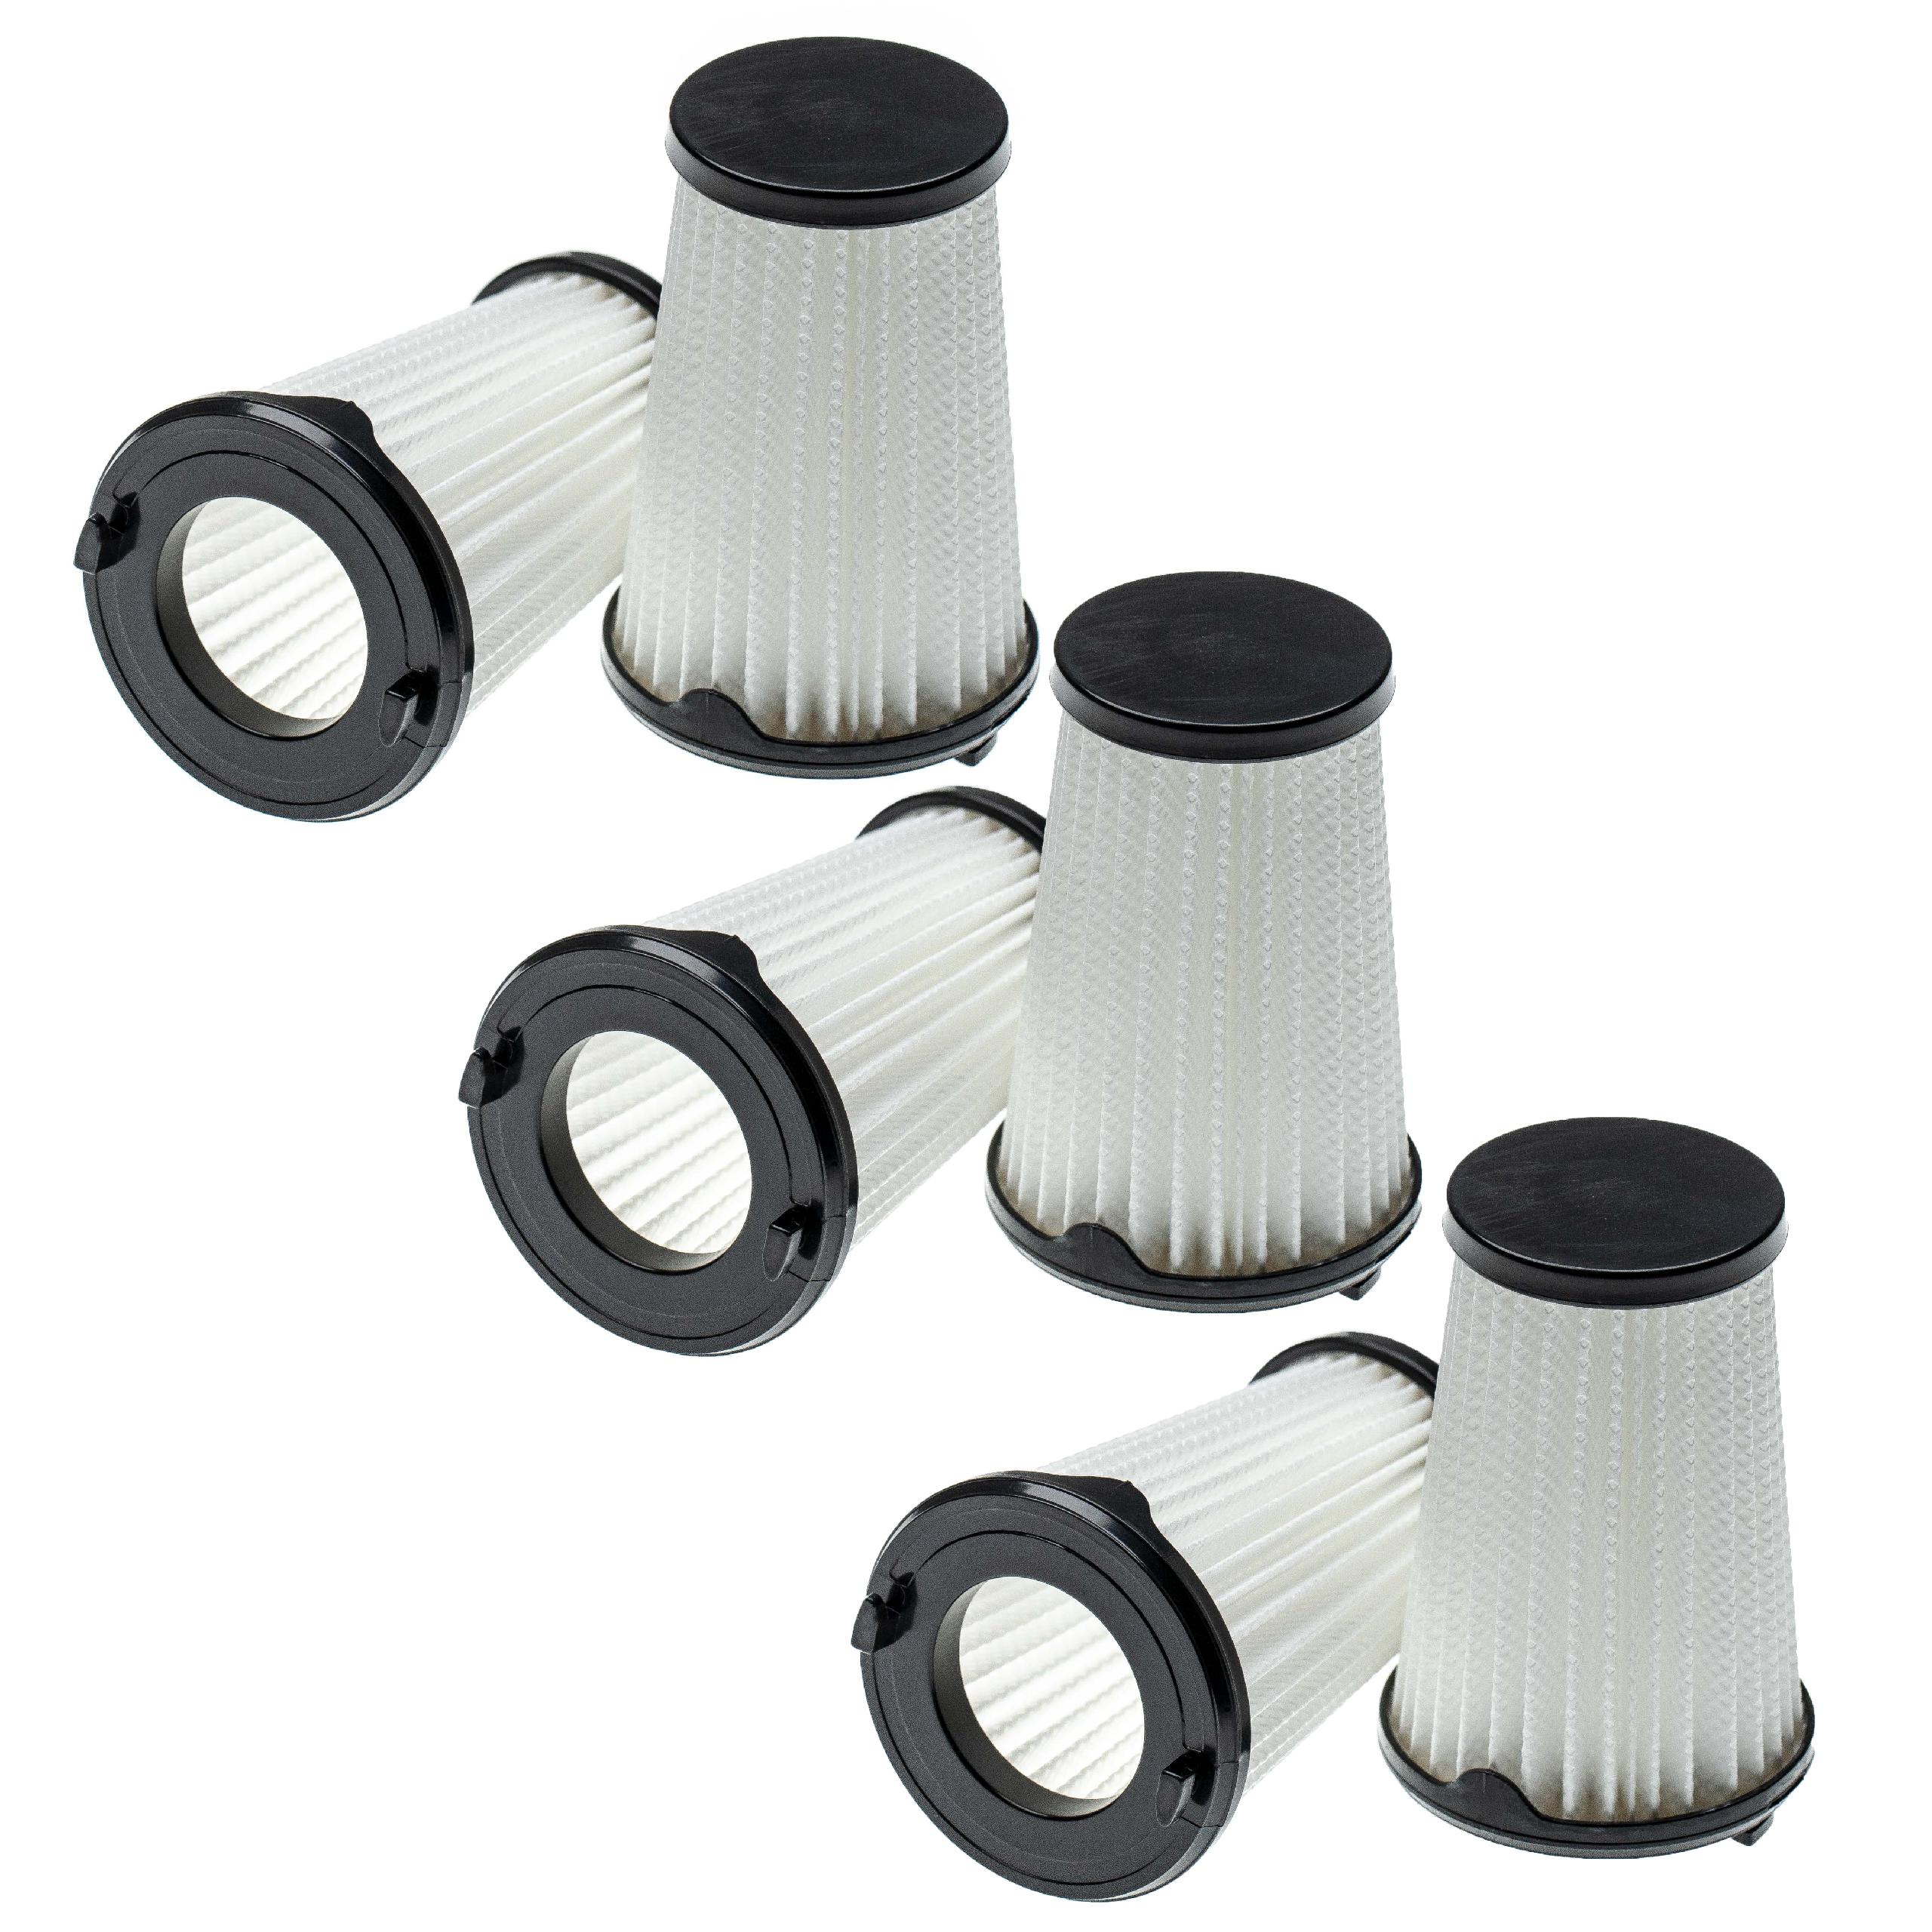 6x Filtro reemplaza AEG AEF150, 9001683755, 90094073100 para aspiradora - filtro laminar, negro / blanco